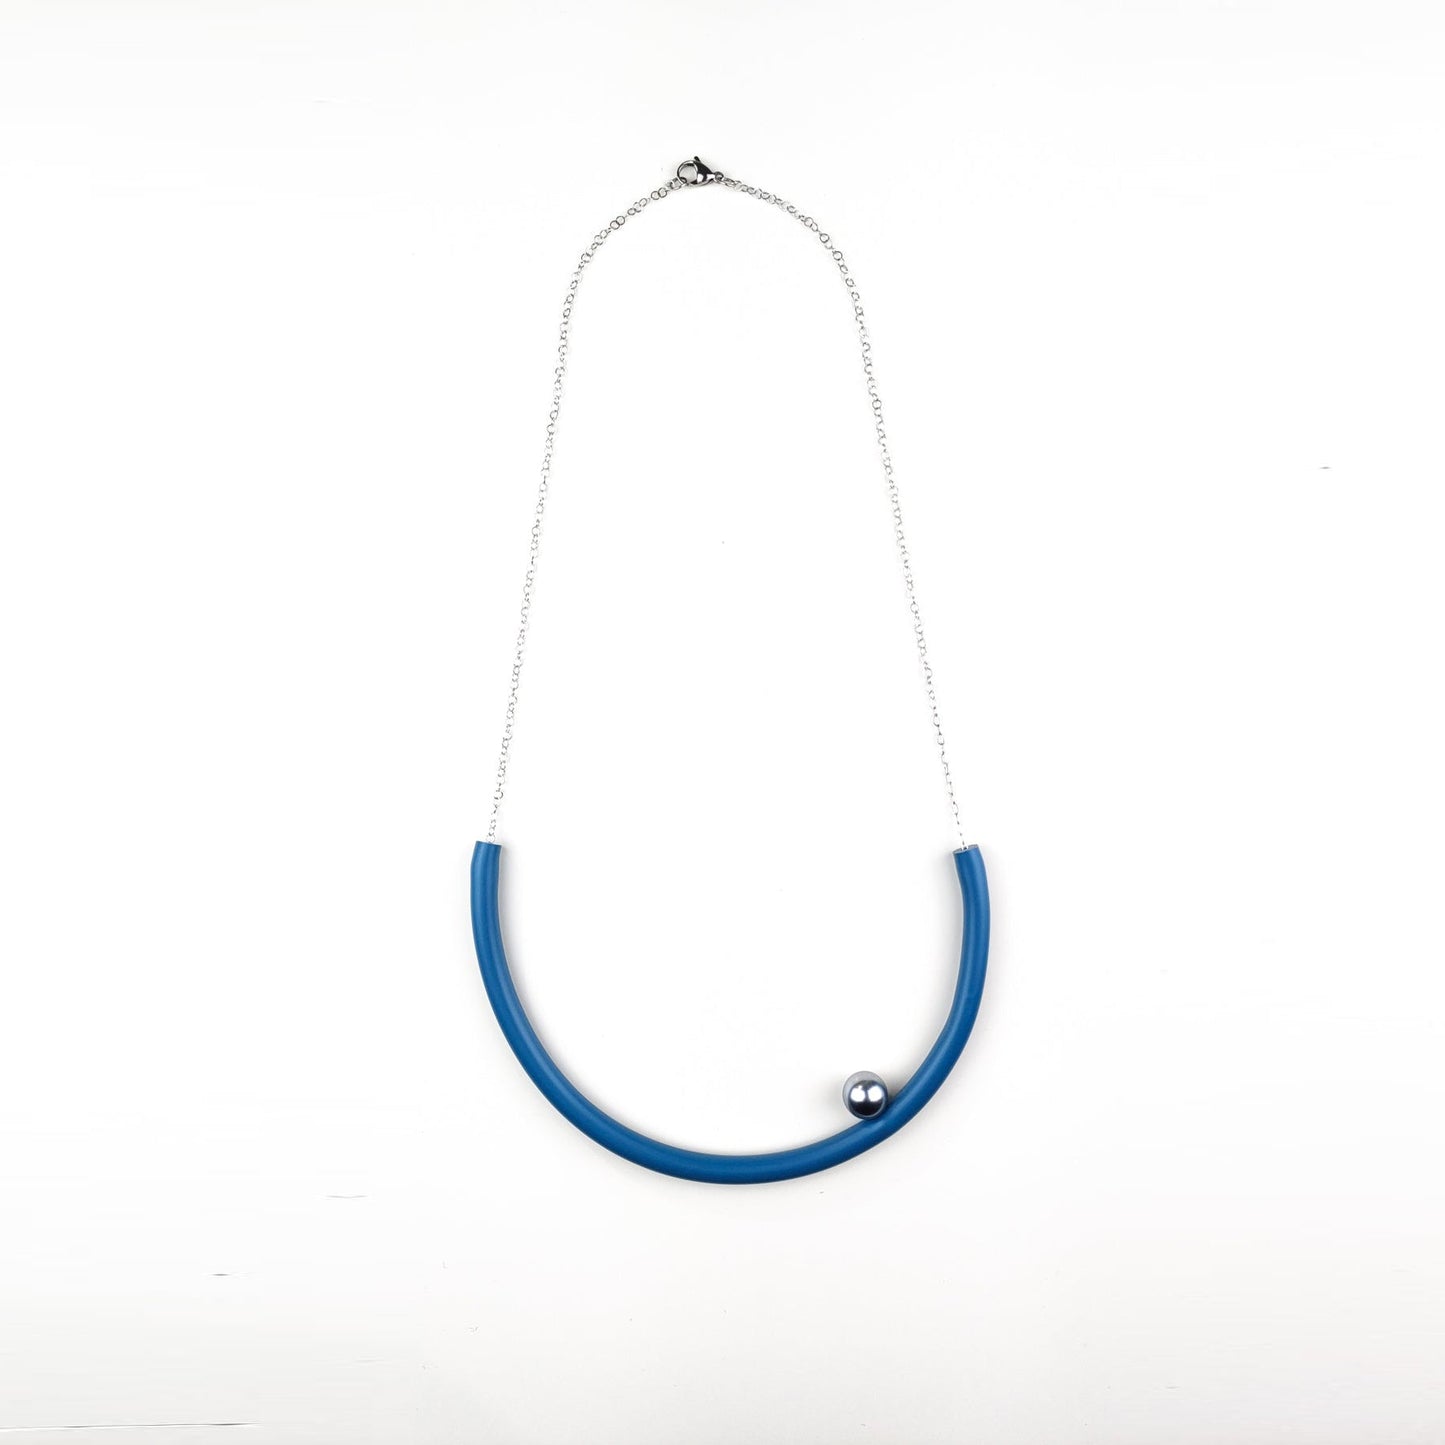 BILICO round necklace - blue avio / red pearl